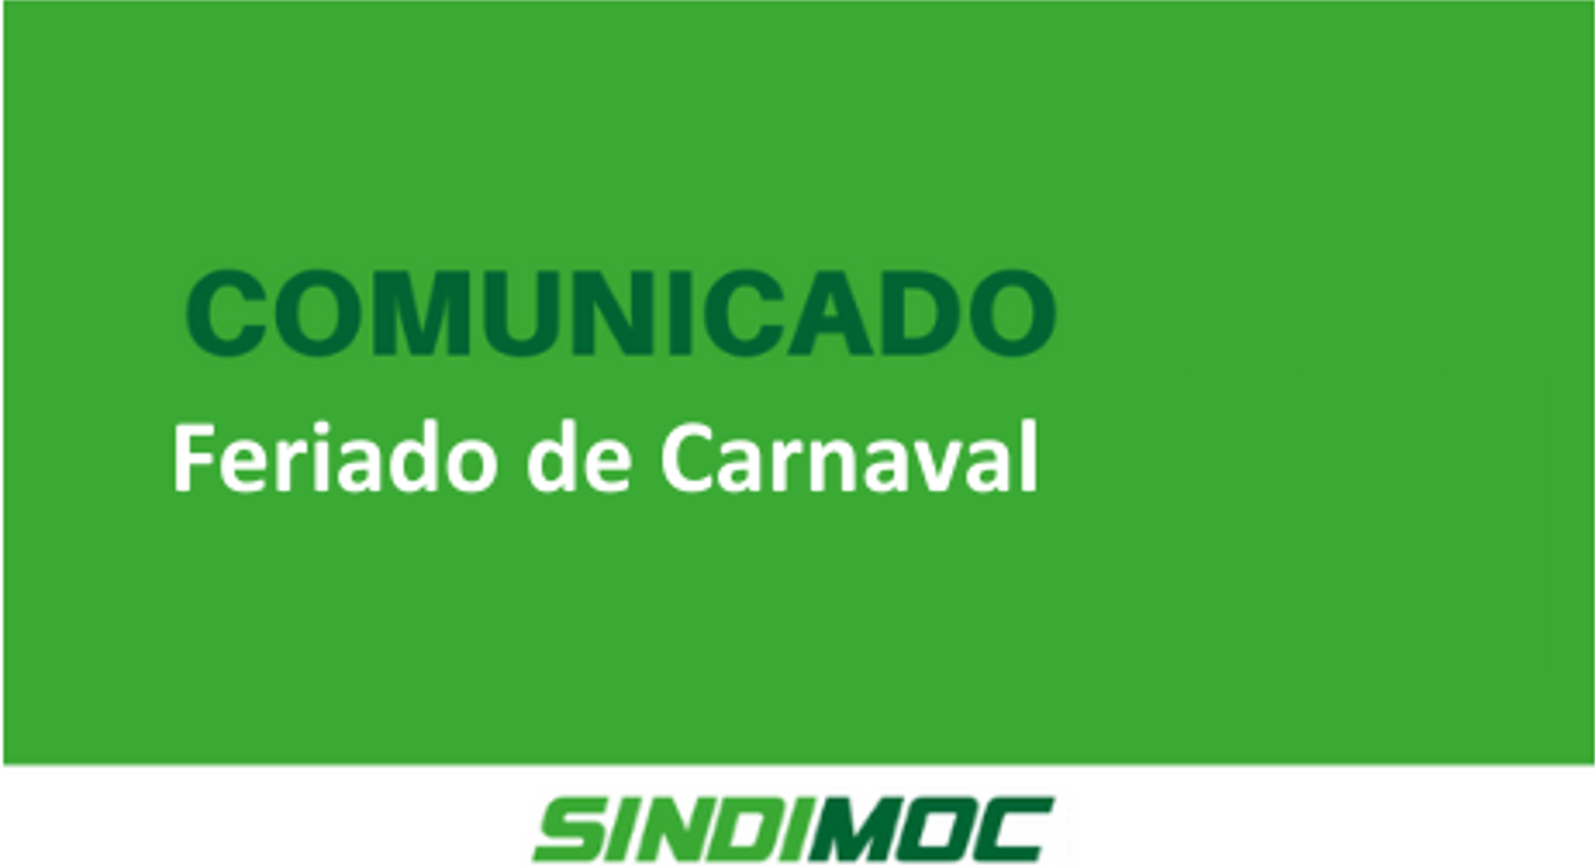 Sindimoc informa sobre funcionamento de serviços no feriado de Carnaval